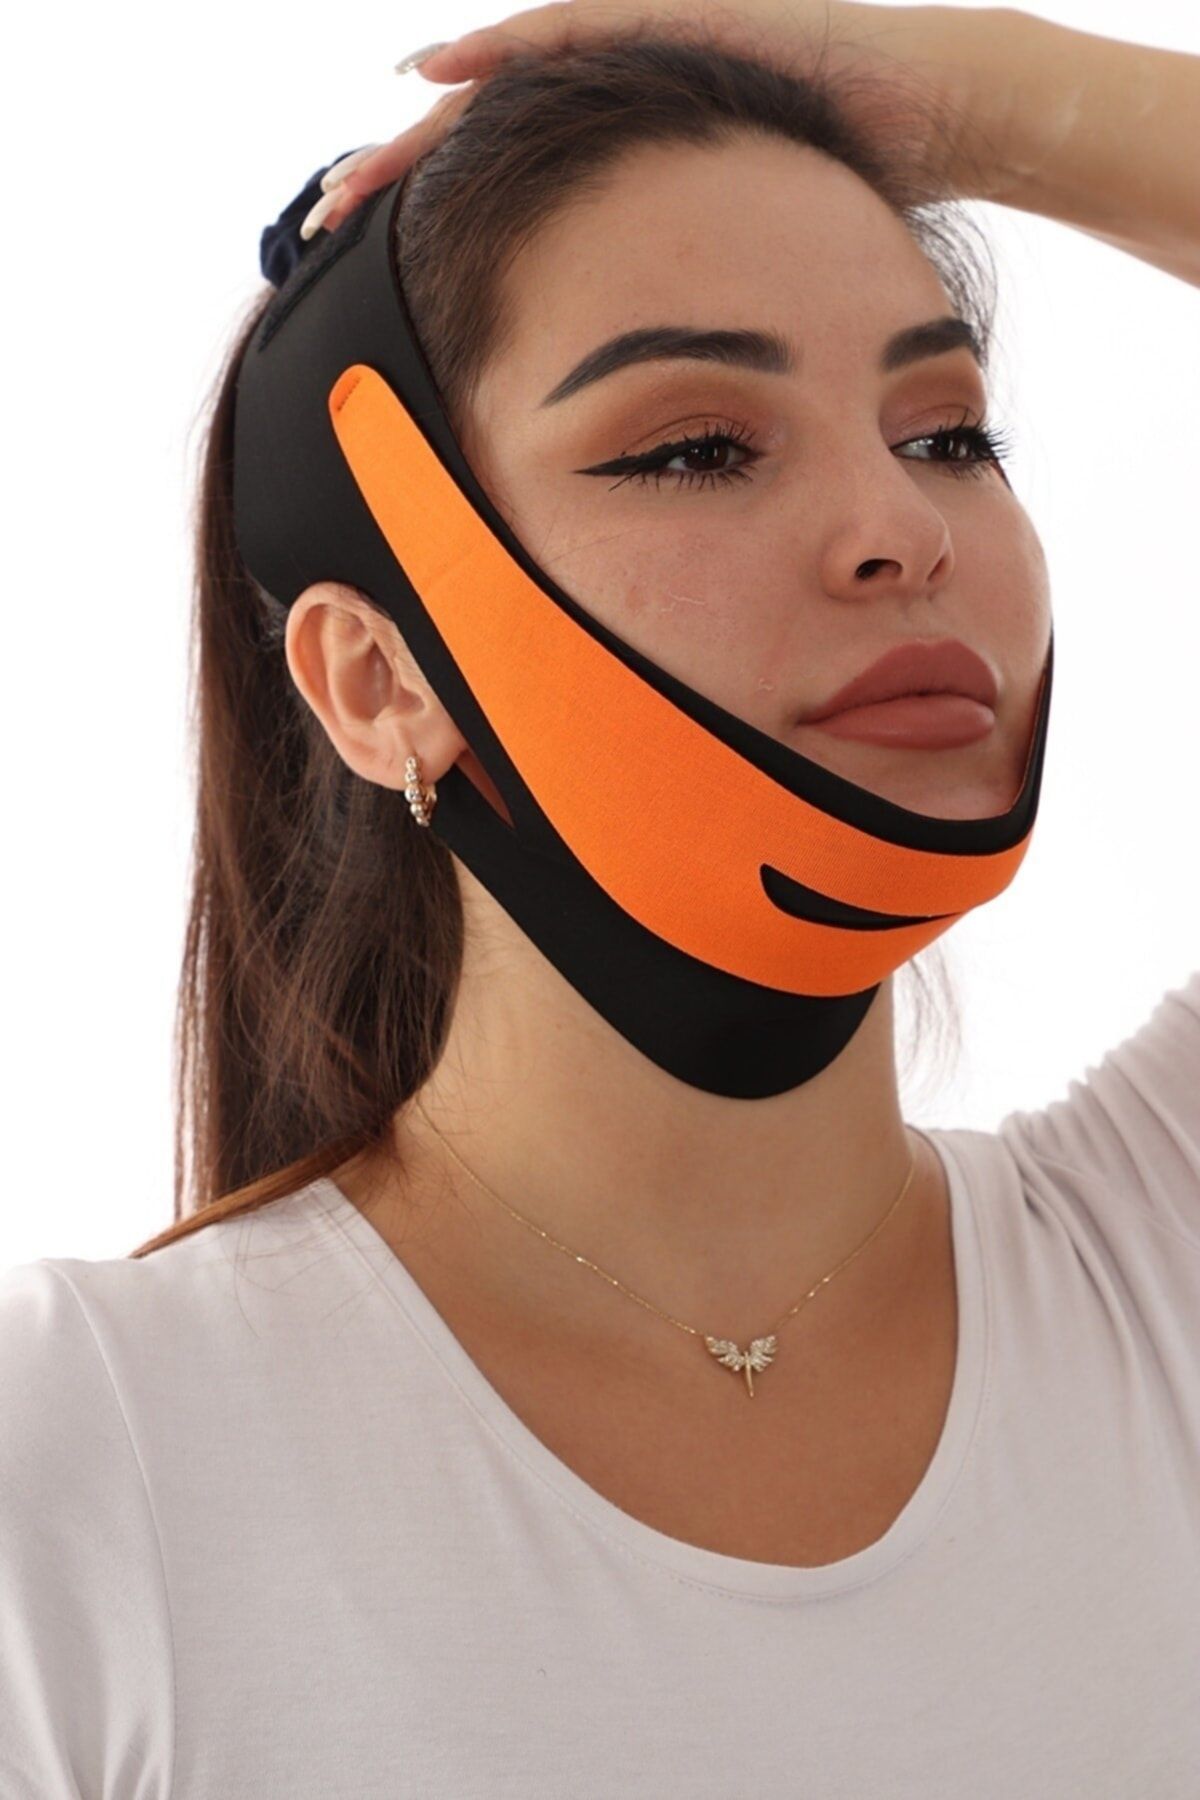 SAUNA SUIT Çene Bandıyüz Sıkılaştırıcı Çene Maskesi Gıdı Çene Yüz Germe Maskesi V Şeklinde Yüz Maske